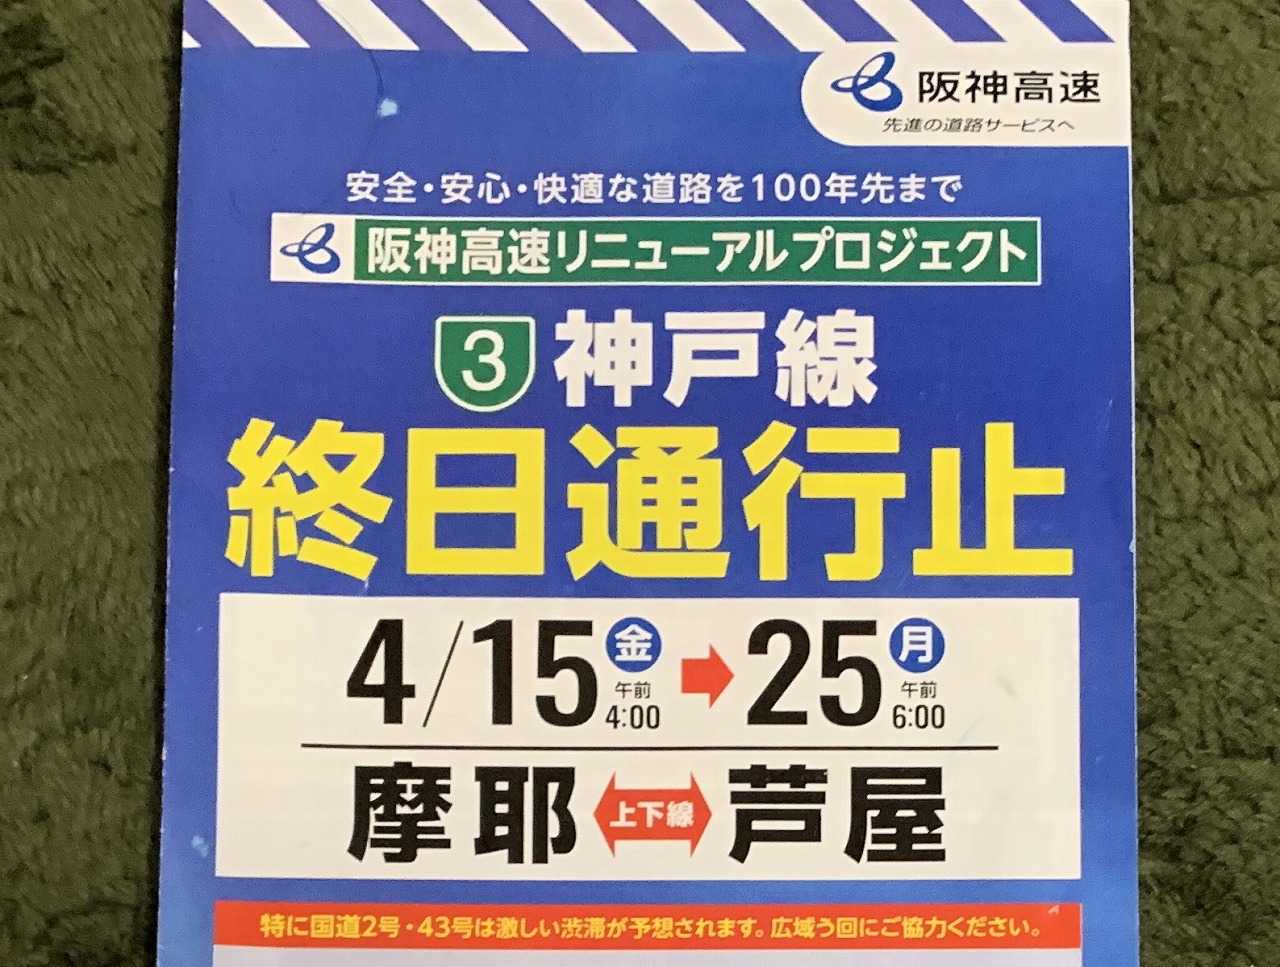 「阪神高速 3号神戸線」終日通行止め。